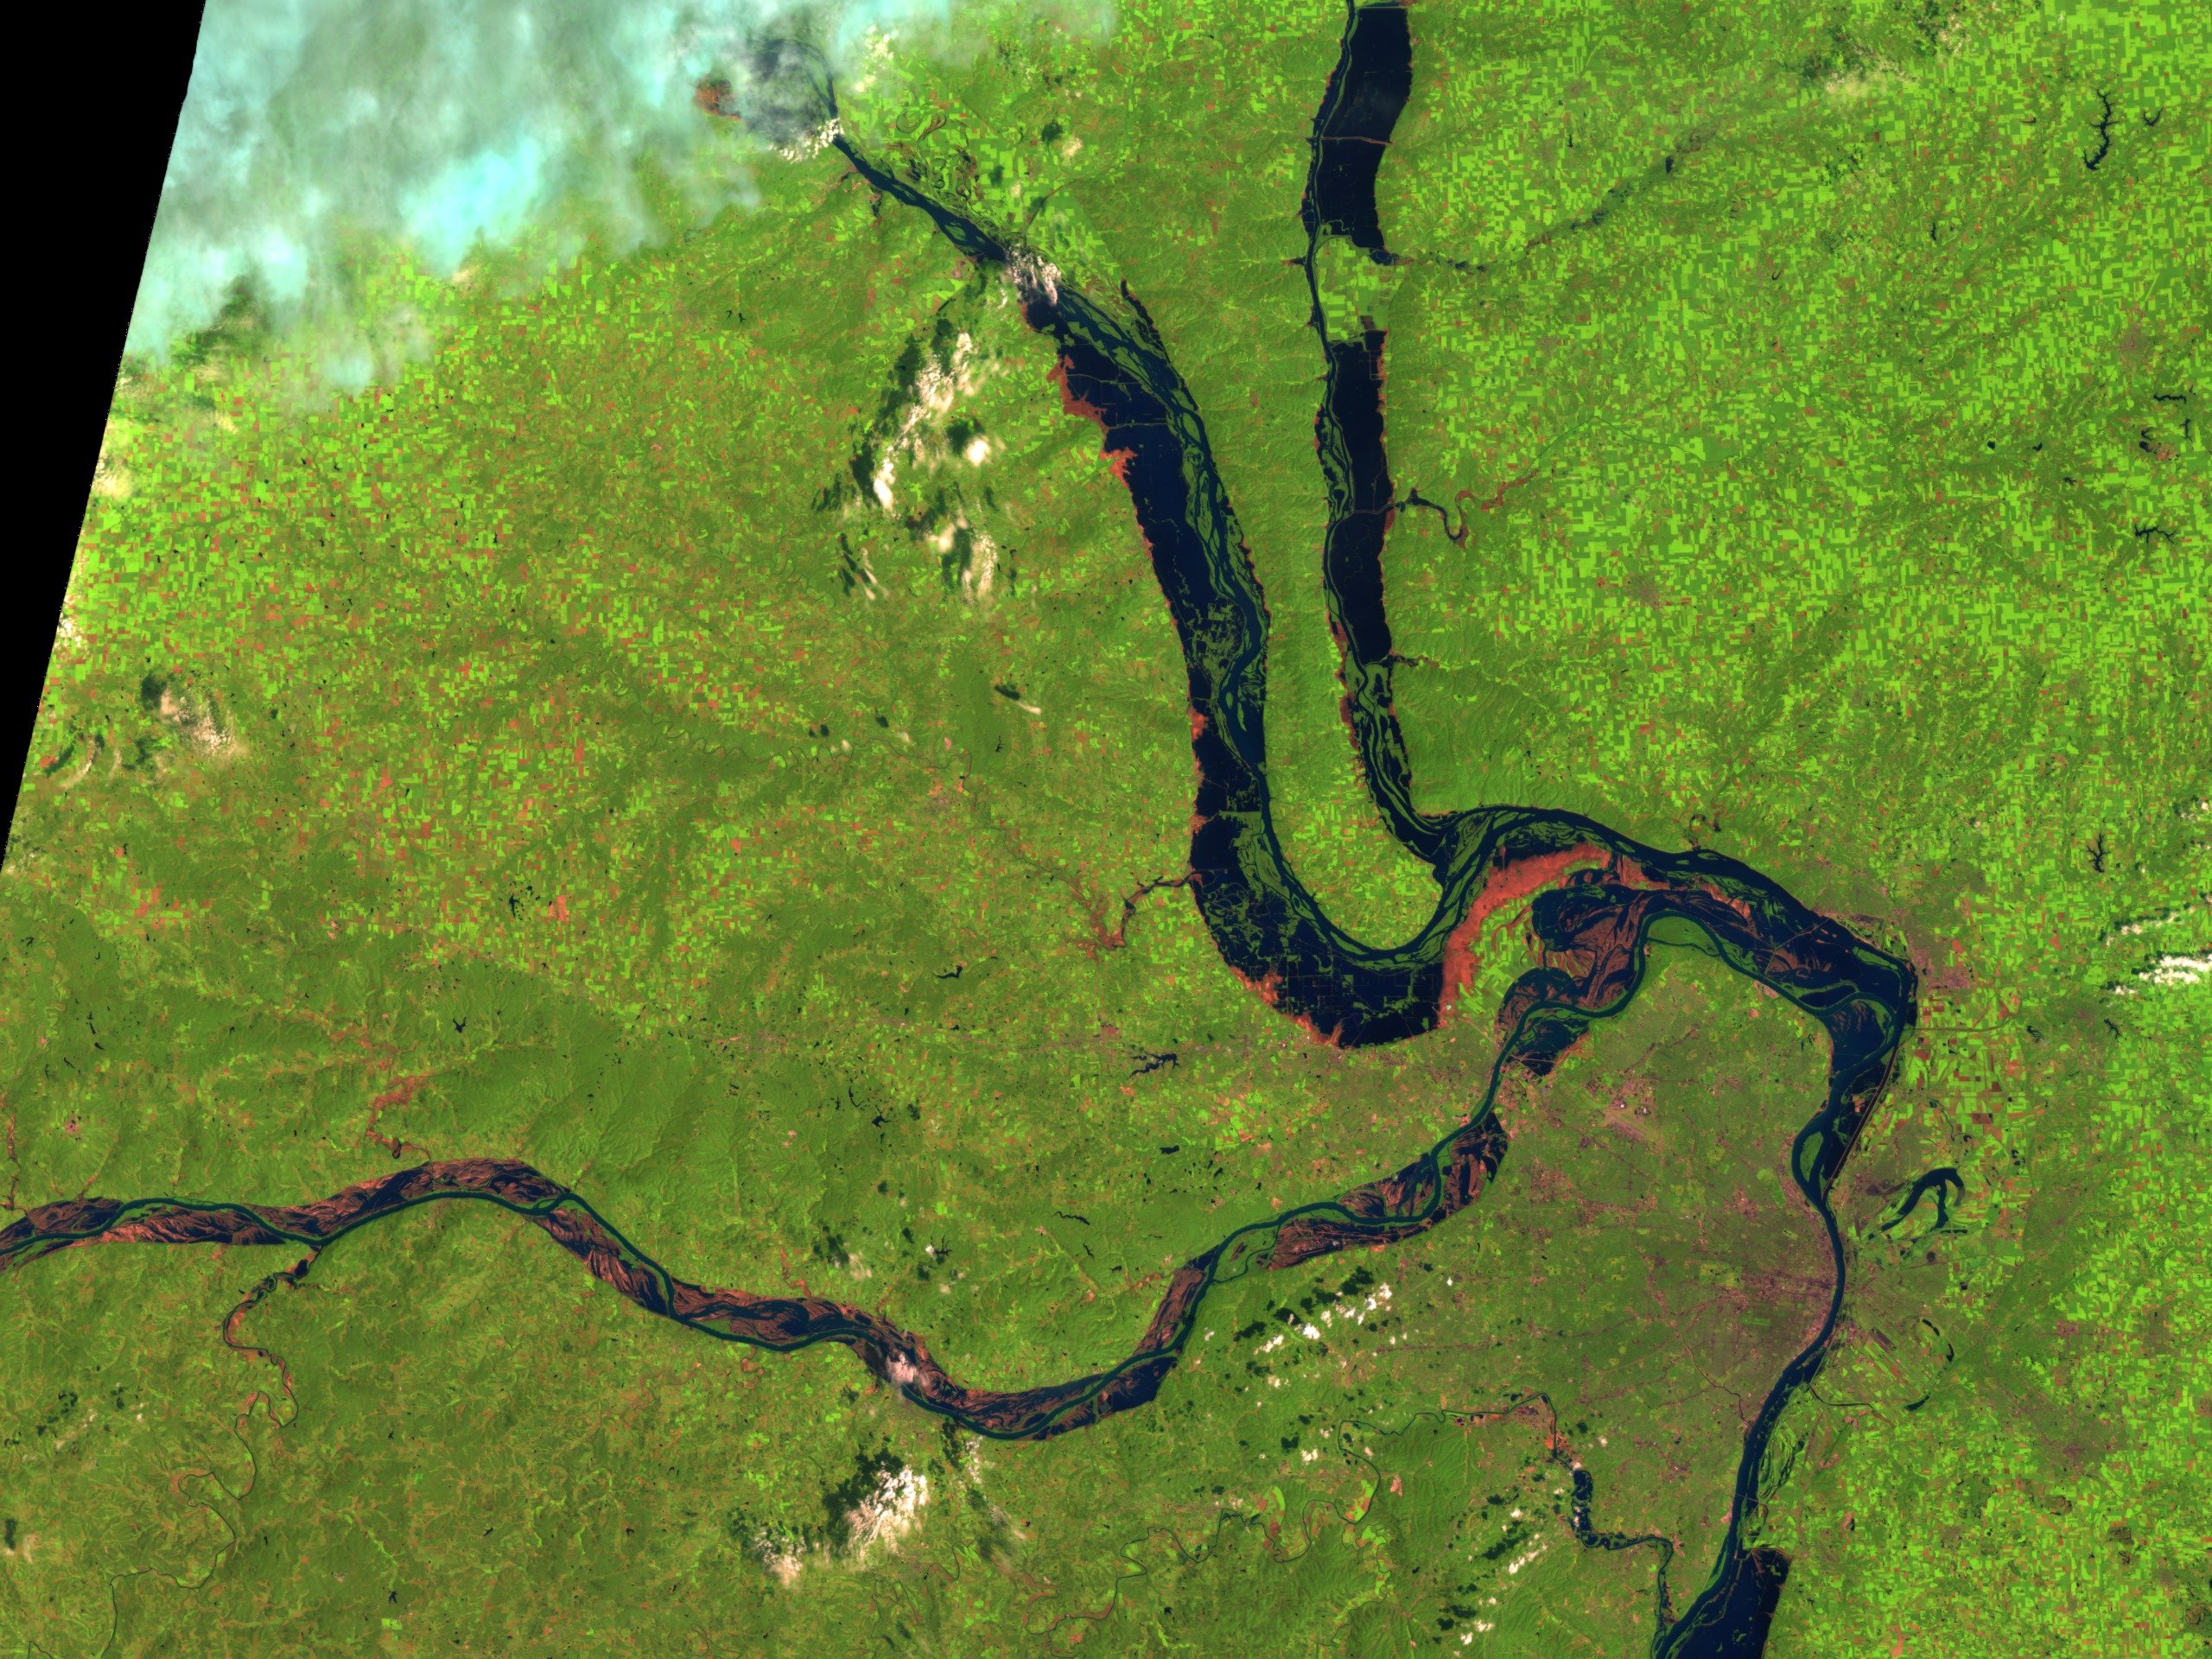 Притоки реки миссури. Миссисипи Дельта со спутника. Дельта реки Миссисипи. Река Миссисипи из космоса. Река Миссисипи со спутника.